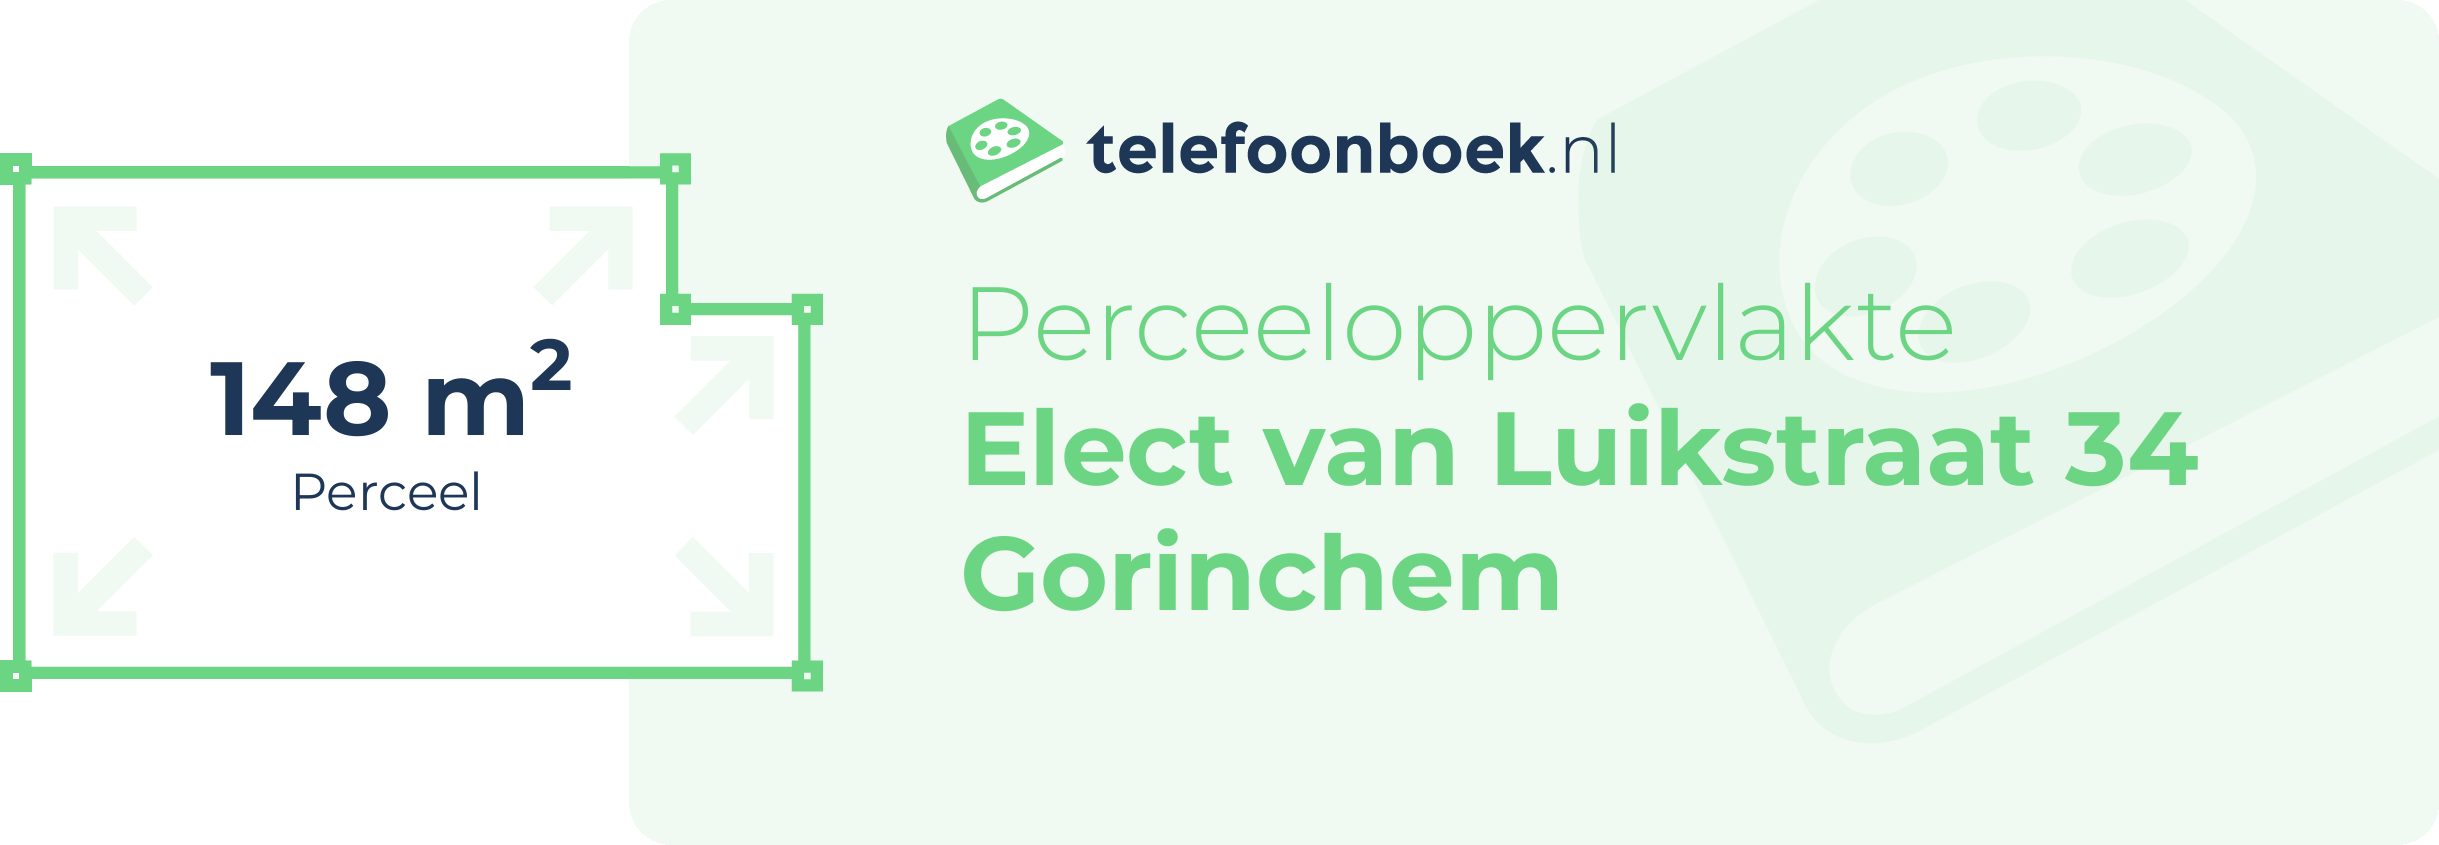 Perceeloppervlakte Elect Van Luikstraat 34 Gorinchem